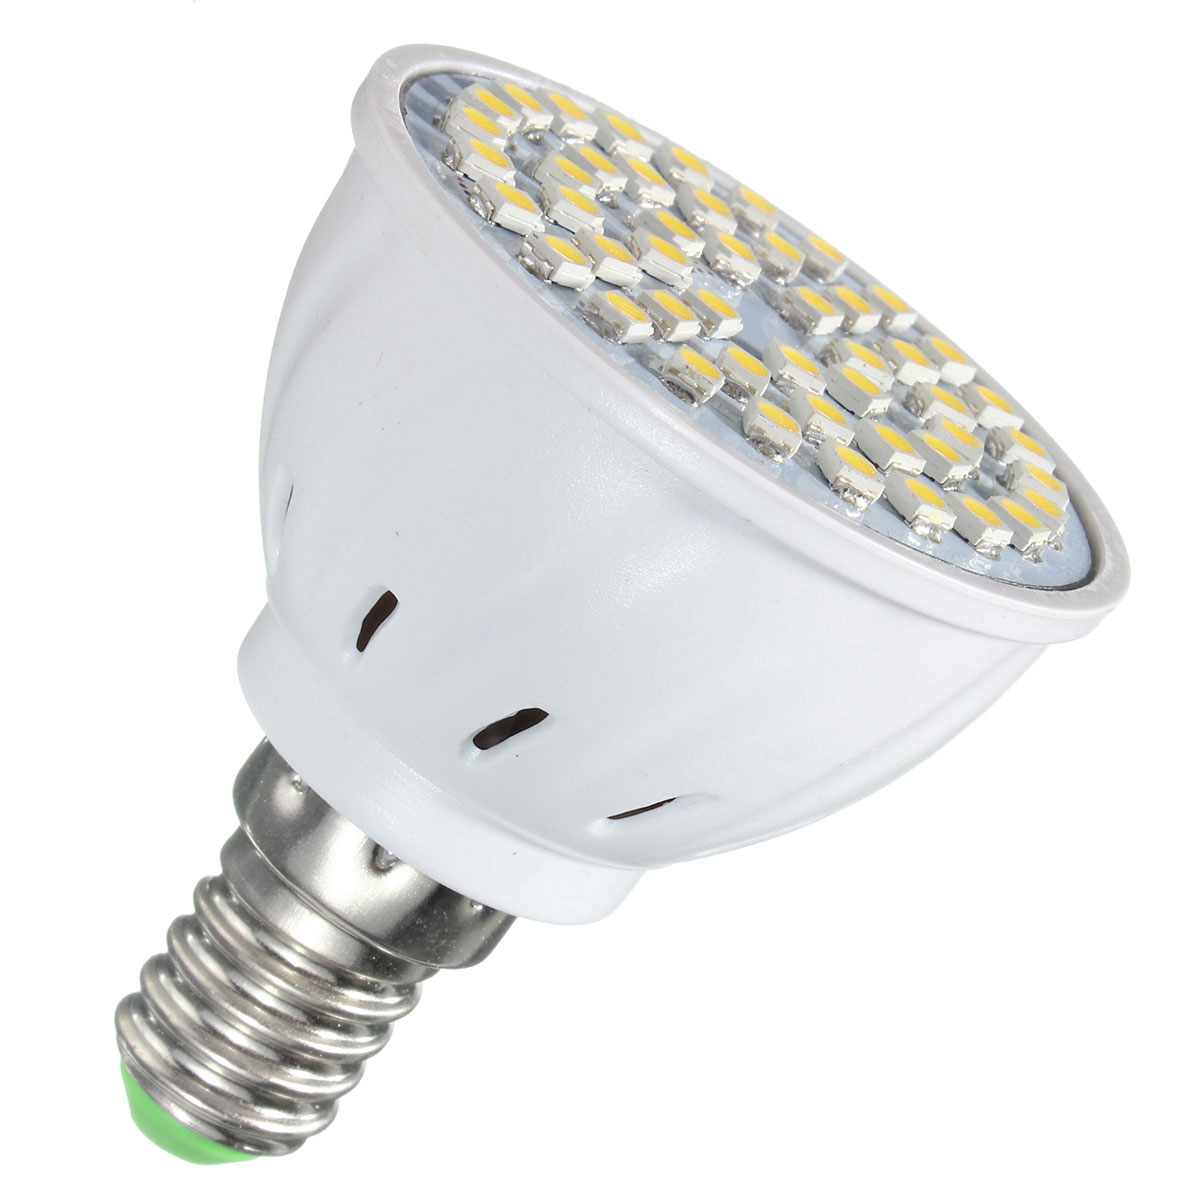 ZX-E27-E14-GU10-MR16-LED-4W-48-SMD-3528-LED-Pure-White-Warm-White-Spot-Lightt-Lamp-Bulb-AC110V-AC220-1076565-8